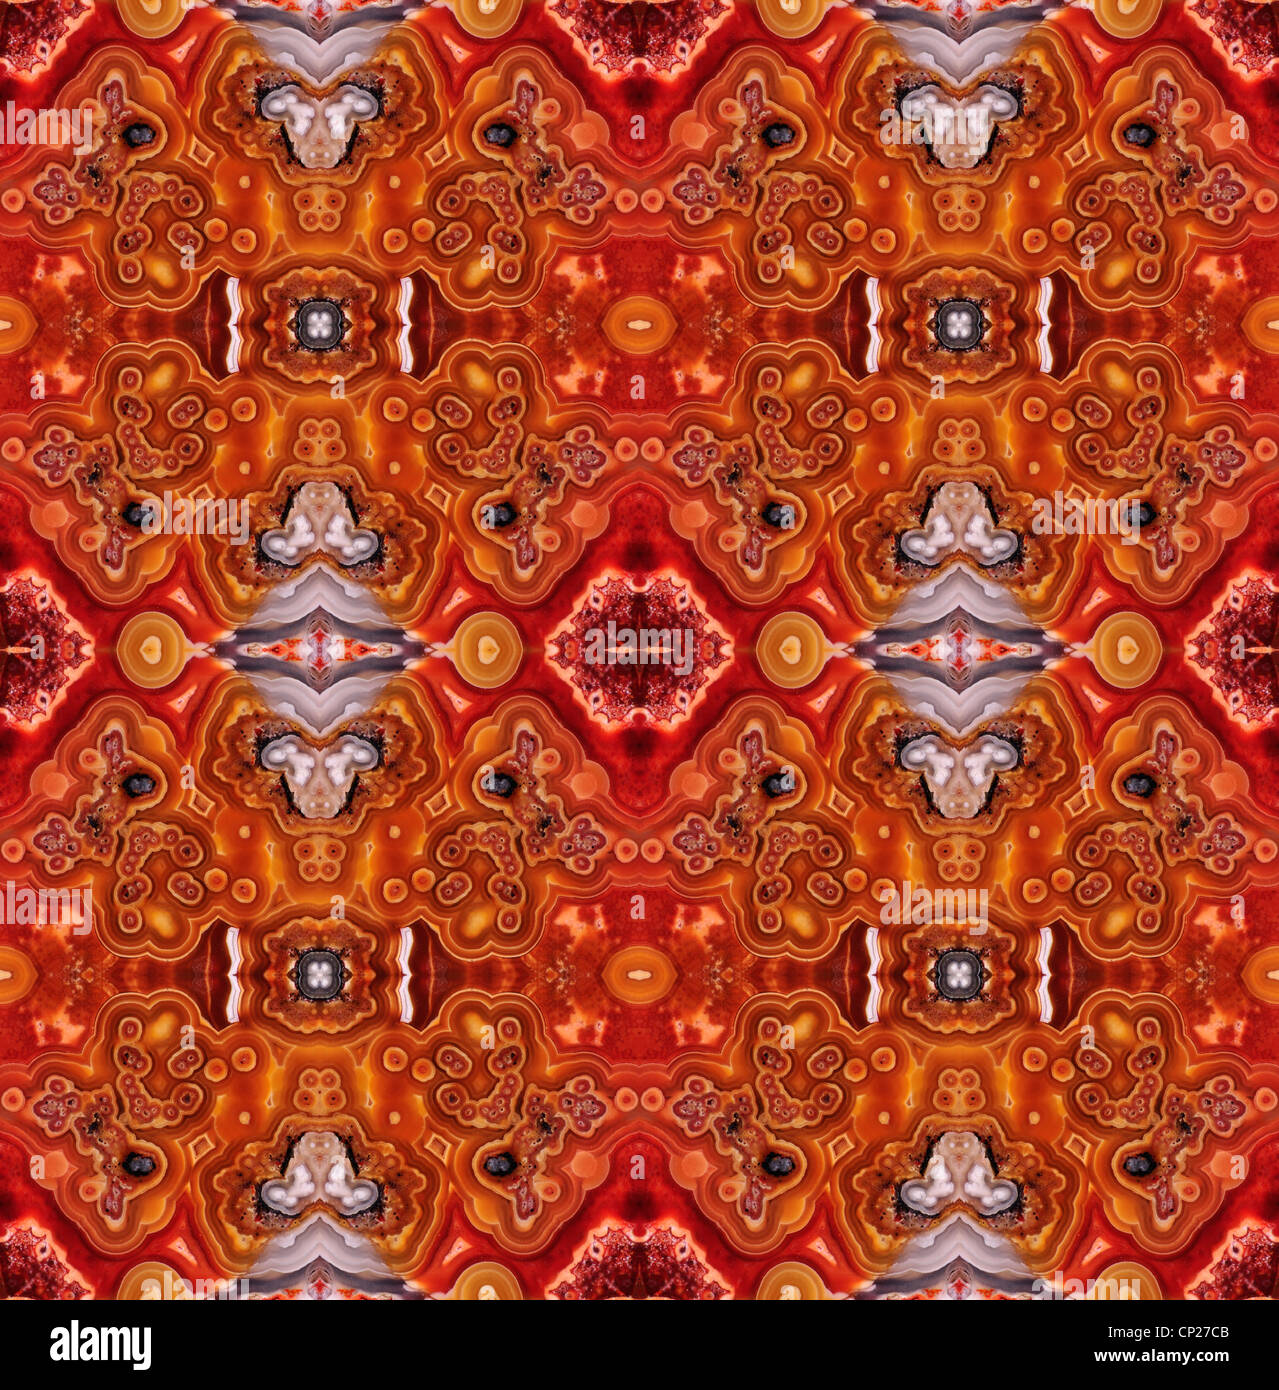 Tranche polie de Jasper (opaque, forme à grain fin de calcédoine) motif symétrique faite par la répétition de l'image Banque D'Images